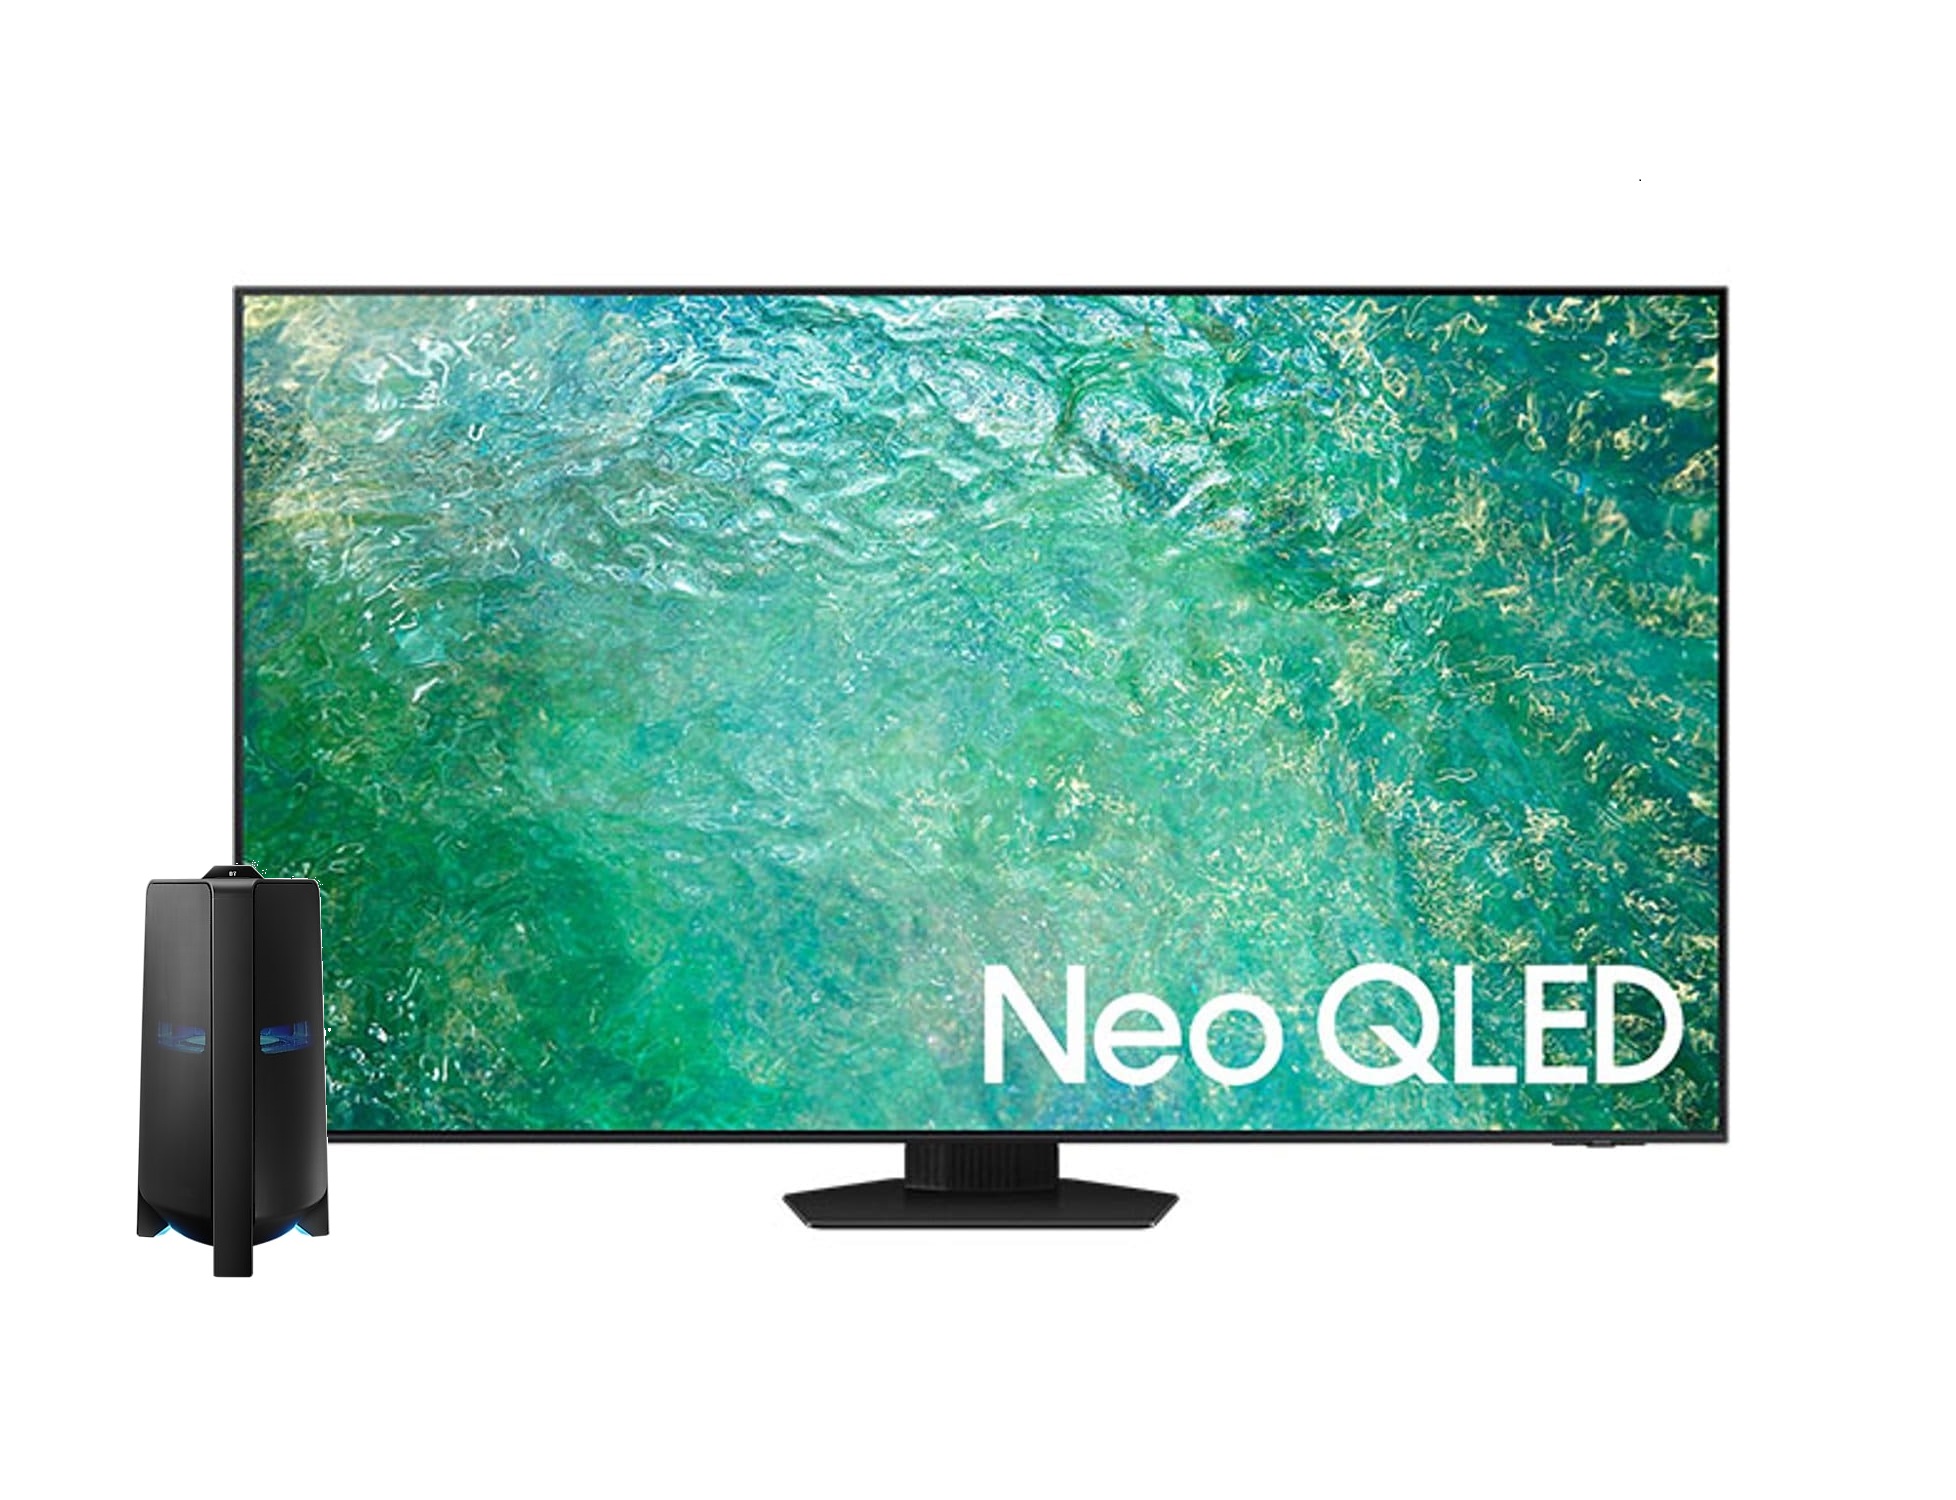 Samsung QLED TV Neo Smart 4K 55 Inch & Samsung MX-T70 1500W Sound Tower